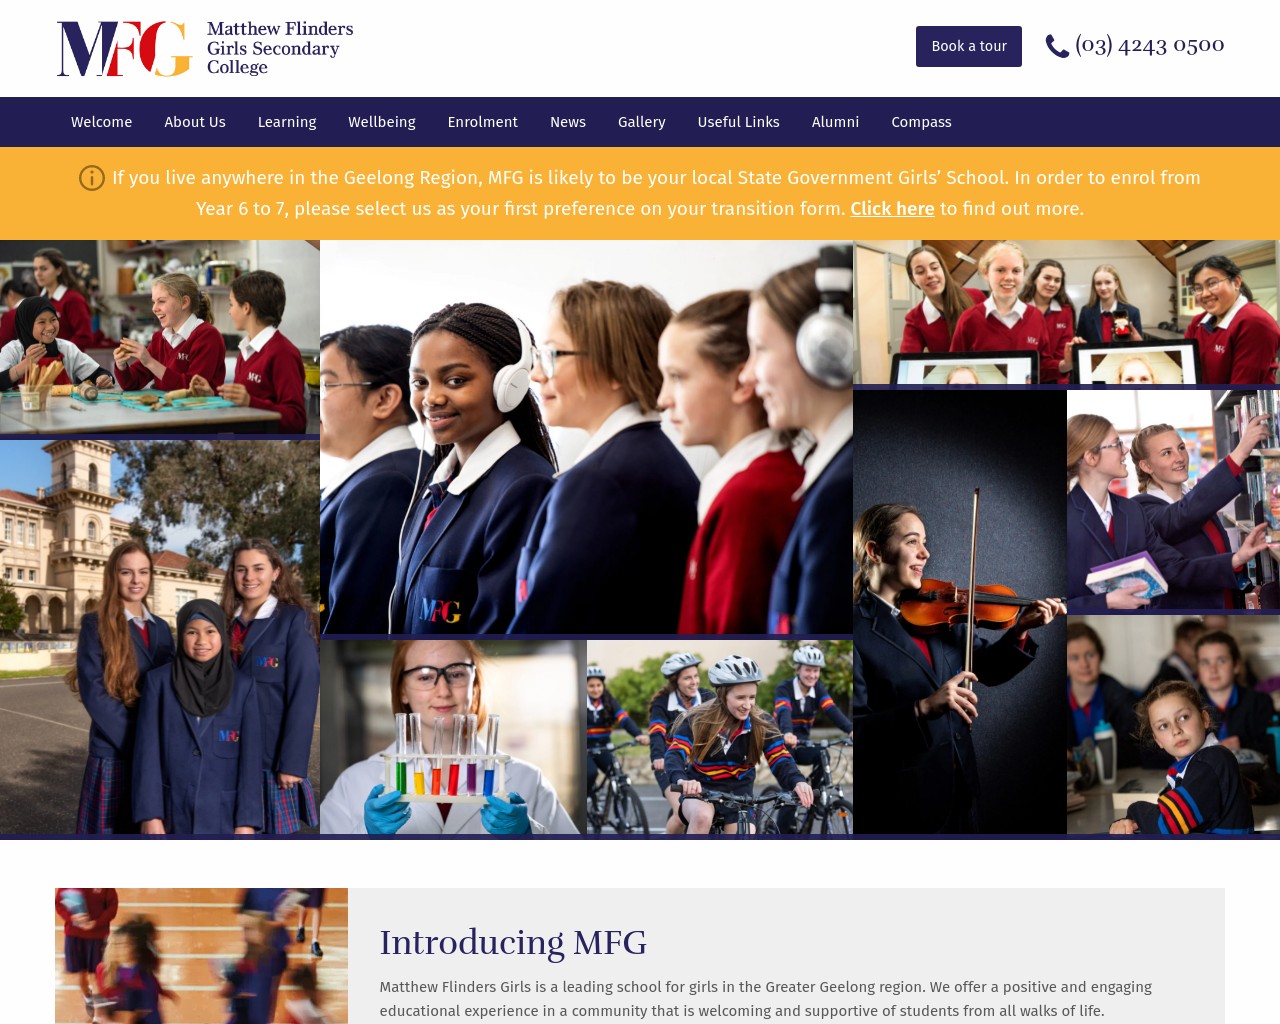 Matthew Flinders Girls Secondary College